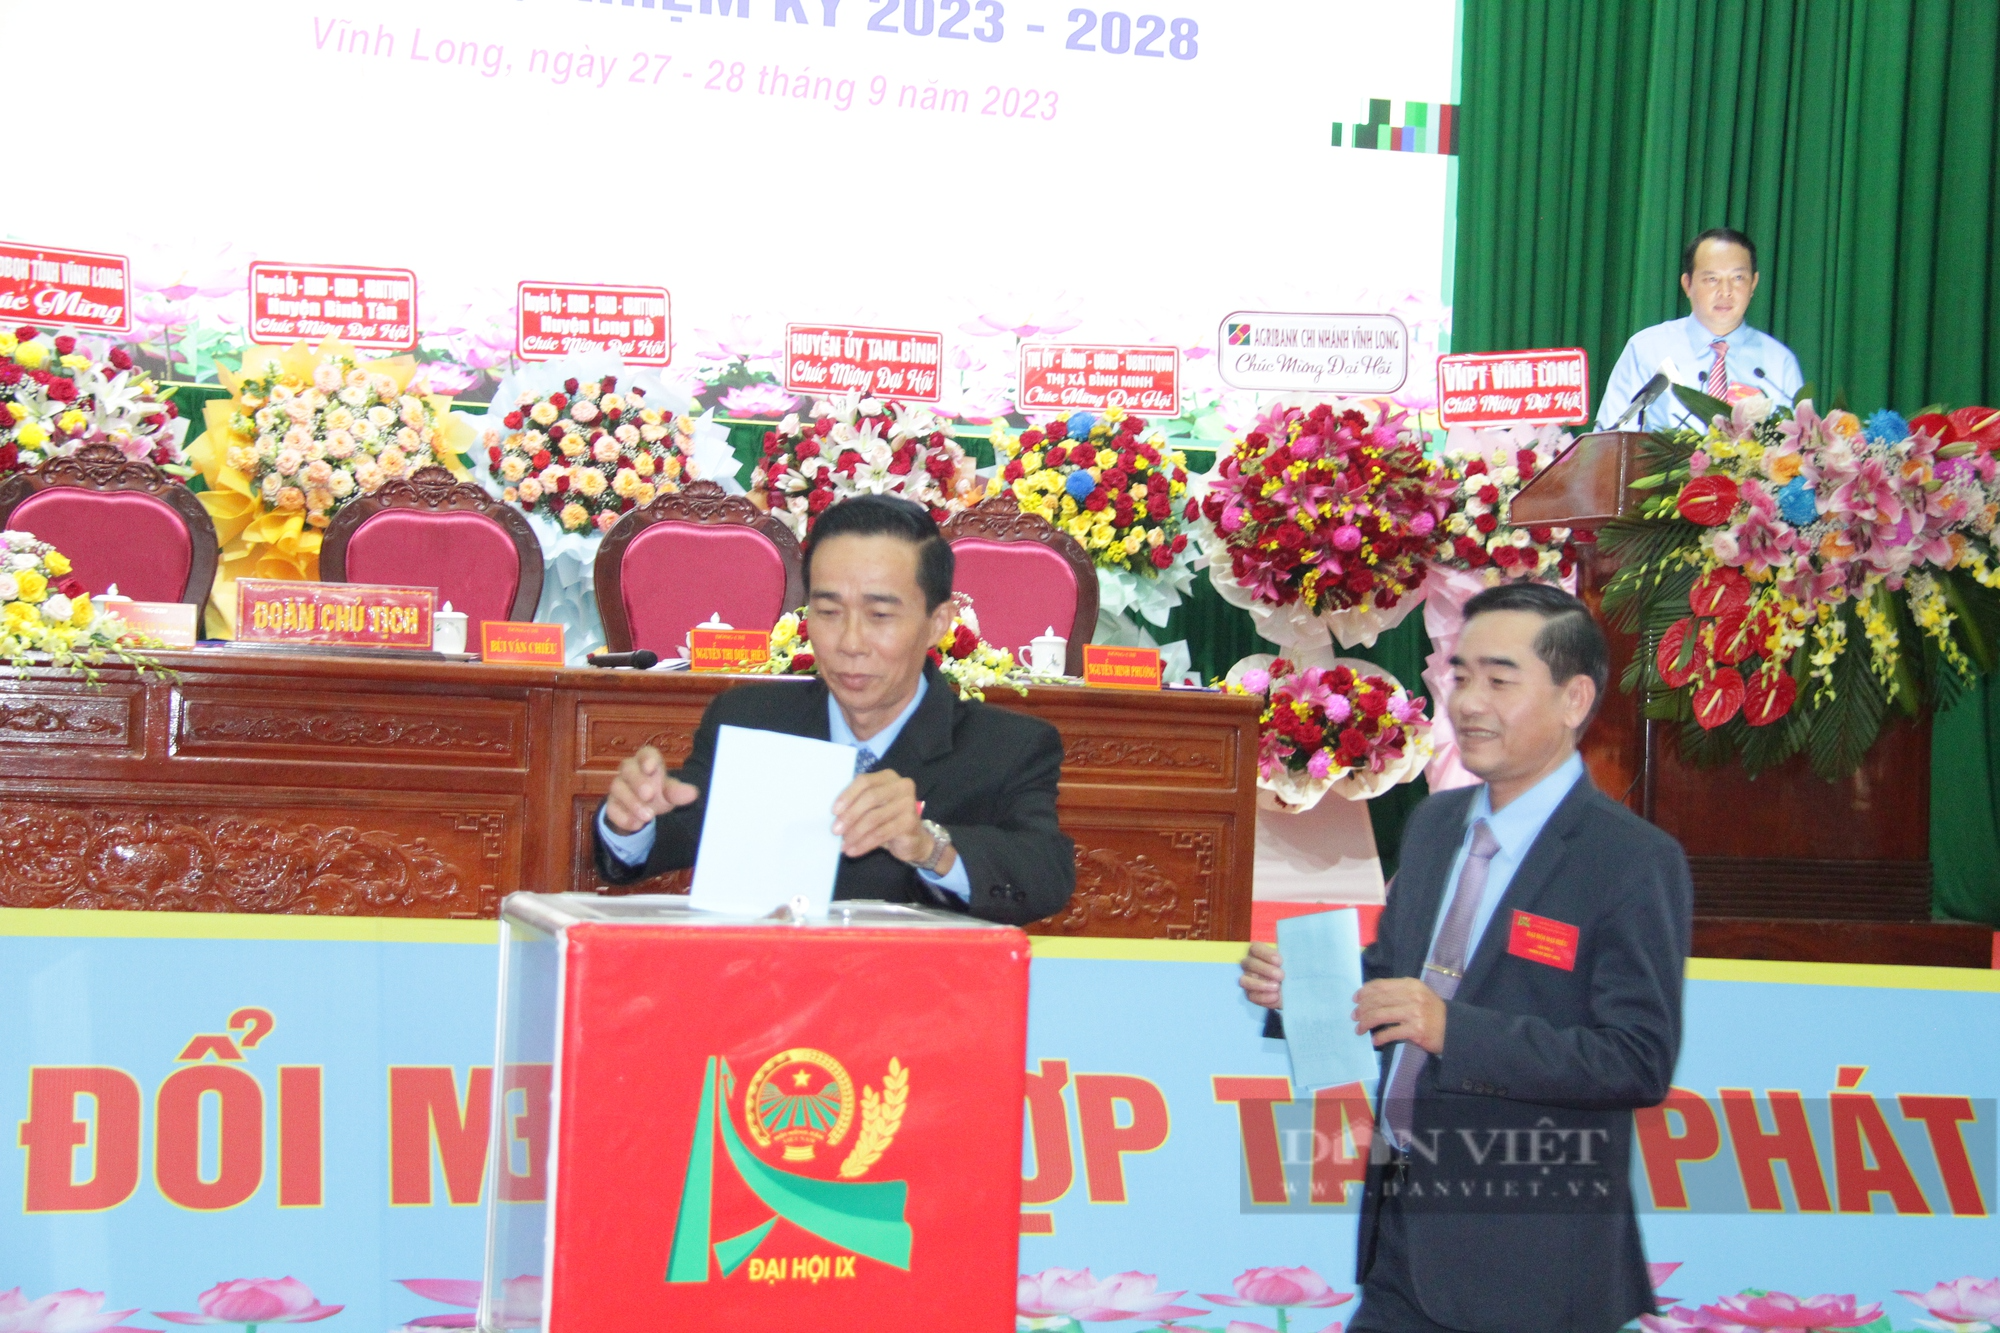 Ông Lê Thanh Hiền làm Chủ tịch Hội Nông dân tỉnh Vĩnh Long nhiệm kỳ 2023-2028 - Ảnh 1.